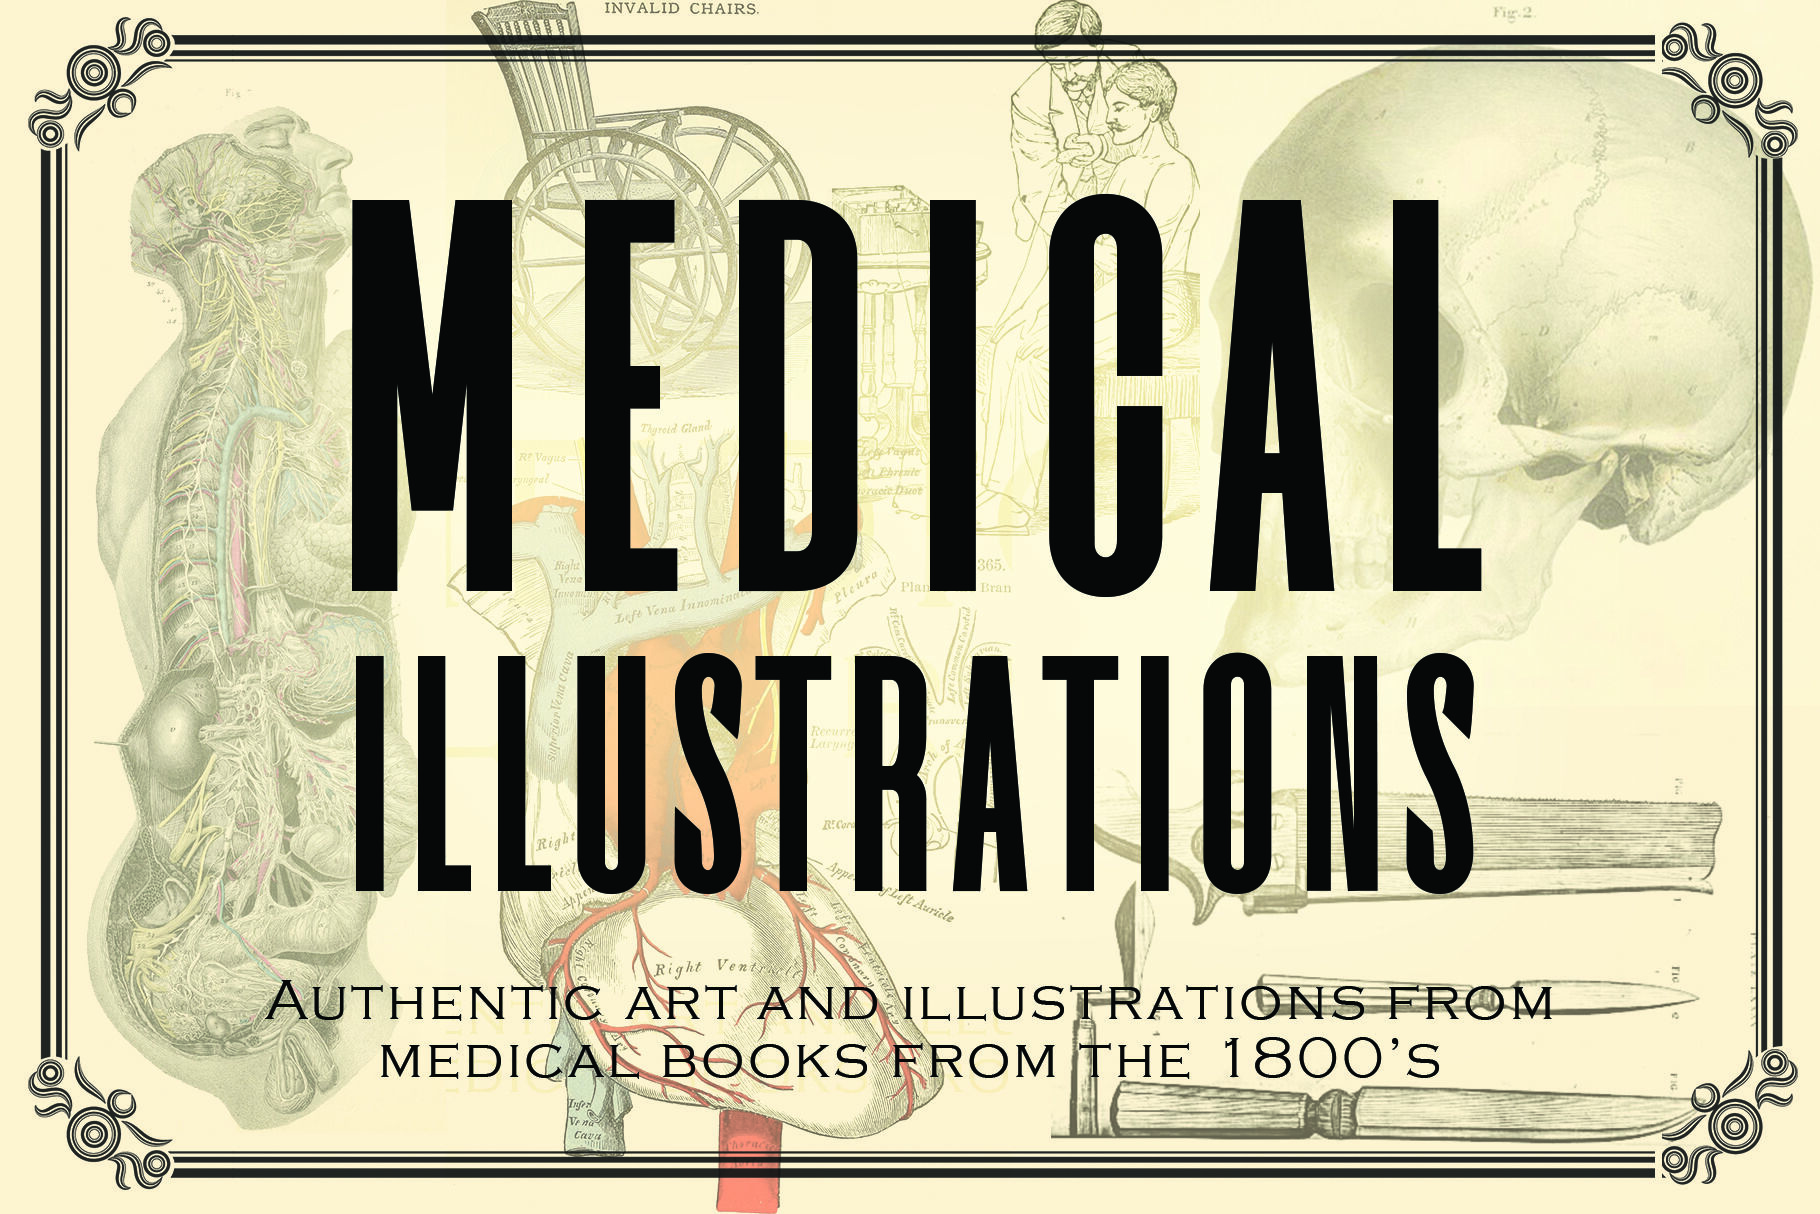 Free download vintage medical illustrations adobe acrobat pro full version download